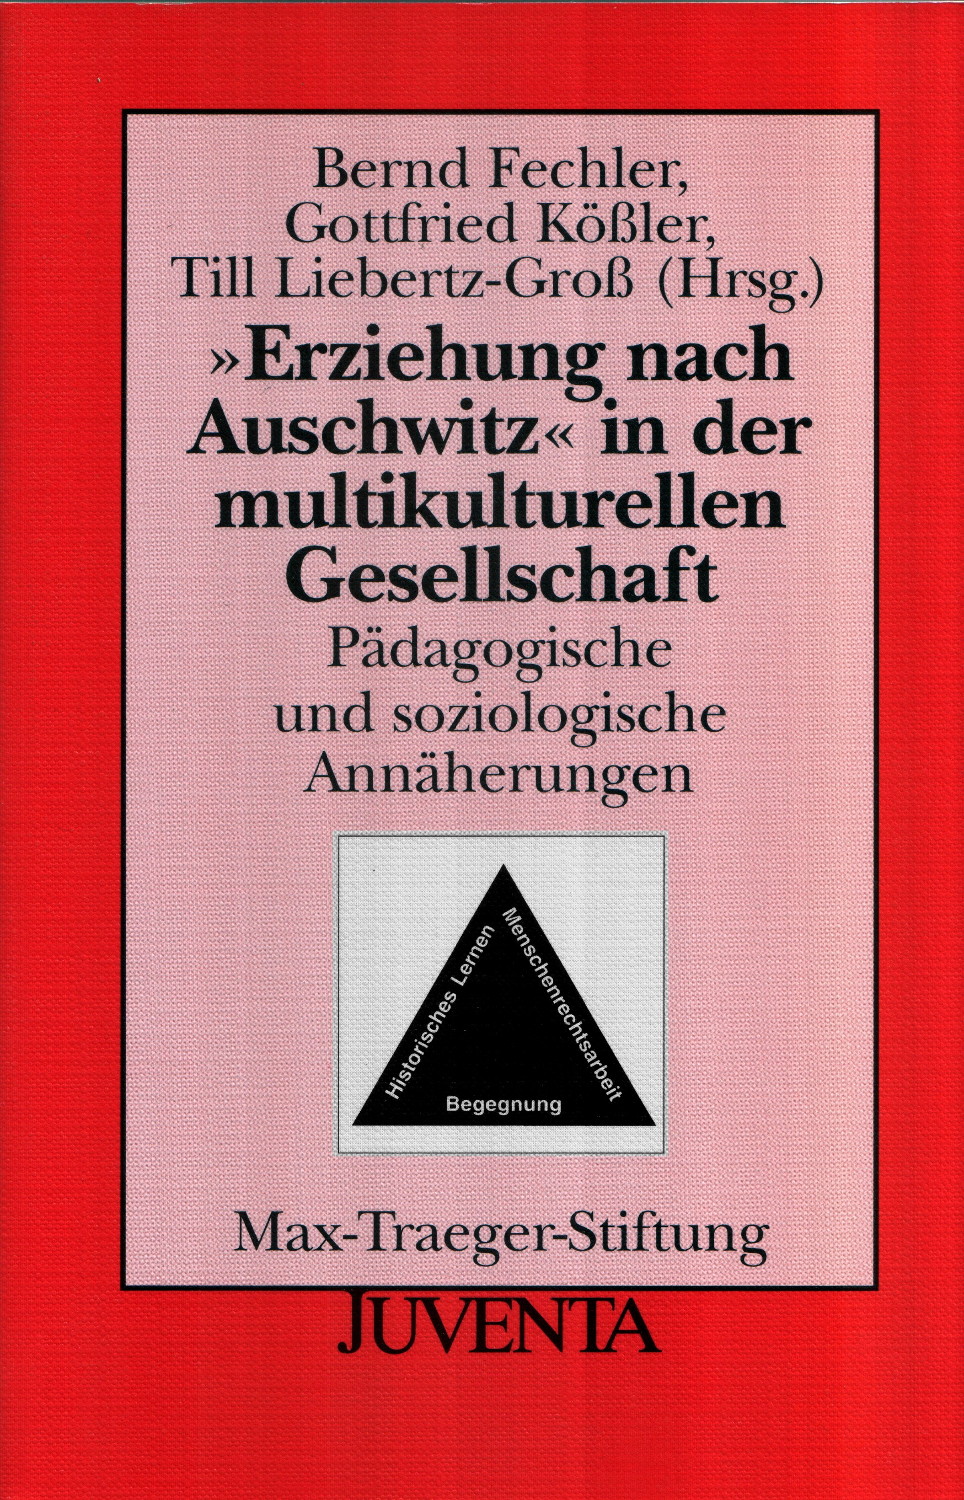 Titelblatt des Buch Erziehung nach Auschwitz